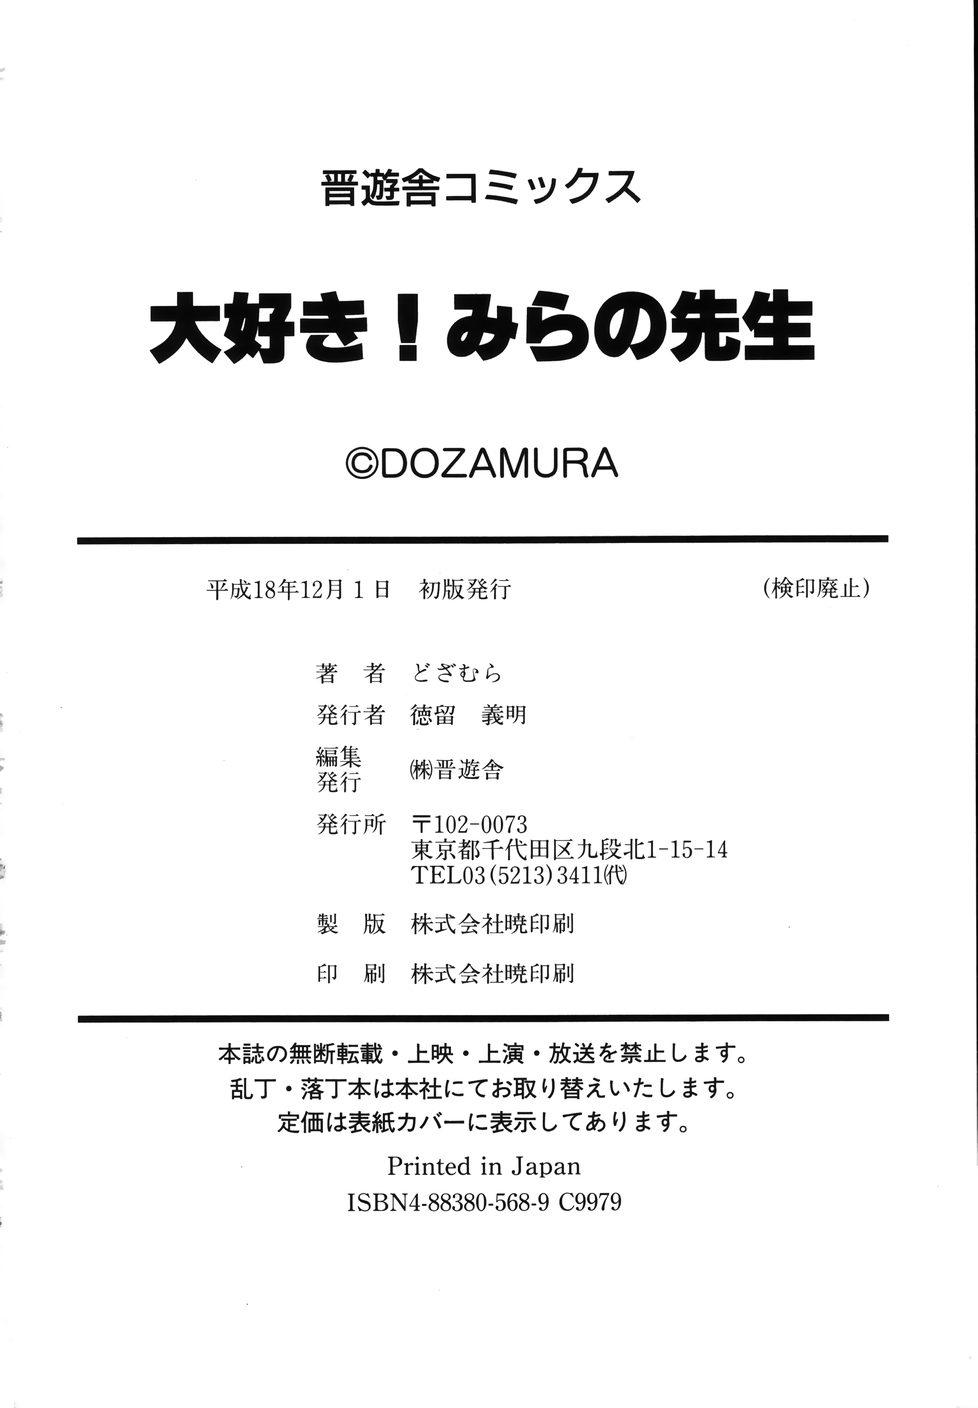 Webcamsex [Dozamura] Daisuki! Mirano-sensei - LOVE LOVE! Ms. MILANO Atm - Page 192